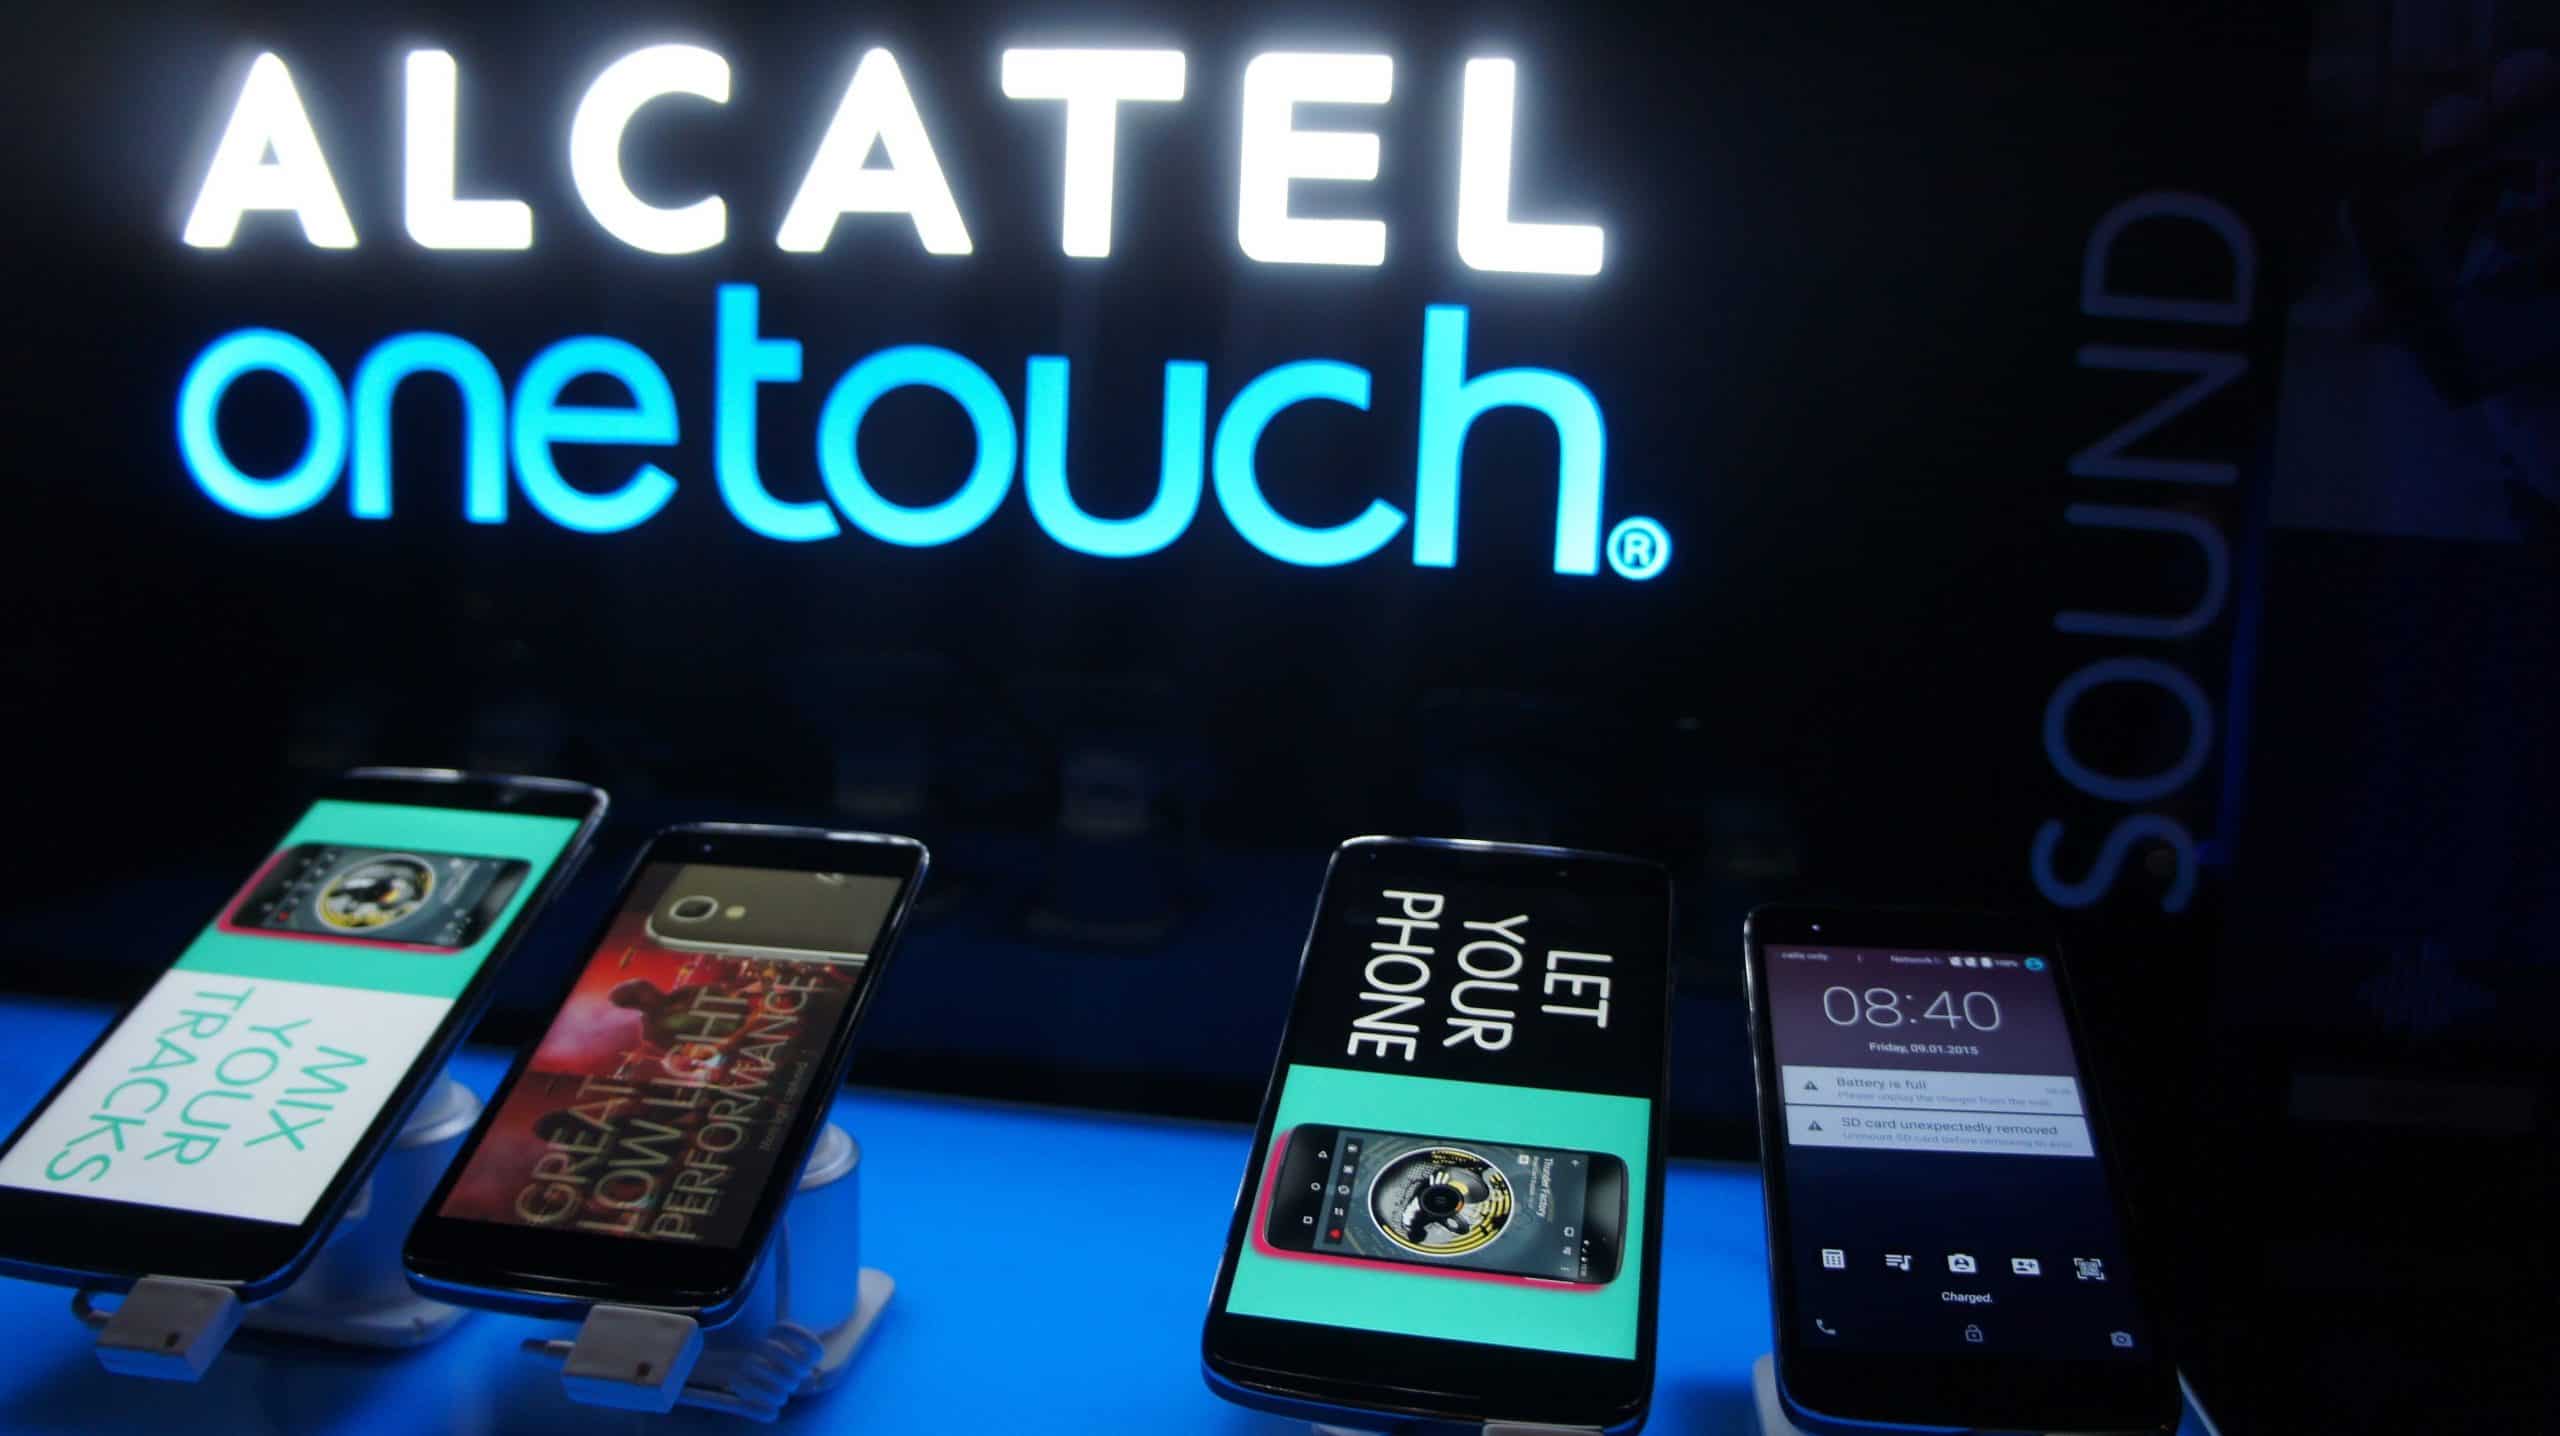 ALCATEL ONETOUCH ने संयुक्त अरब अमीरात में पुरस्कार विजेता प्रमुख IDOL 3 स्मार्टफोन लॉन्च किया